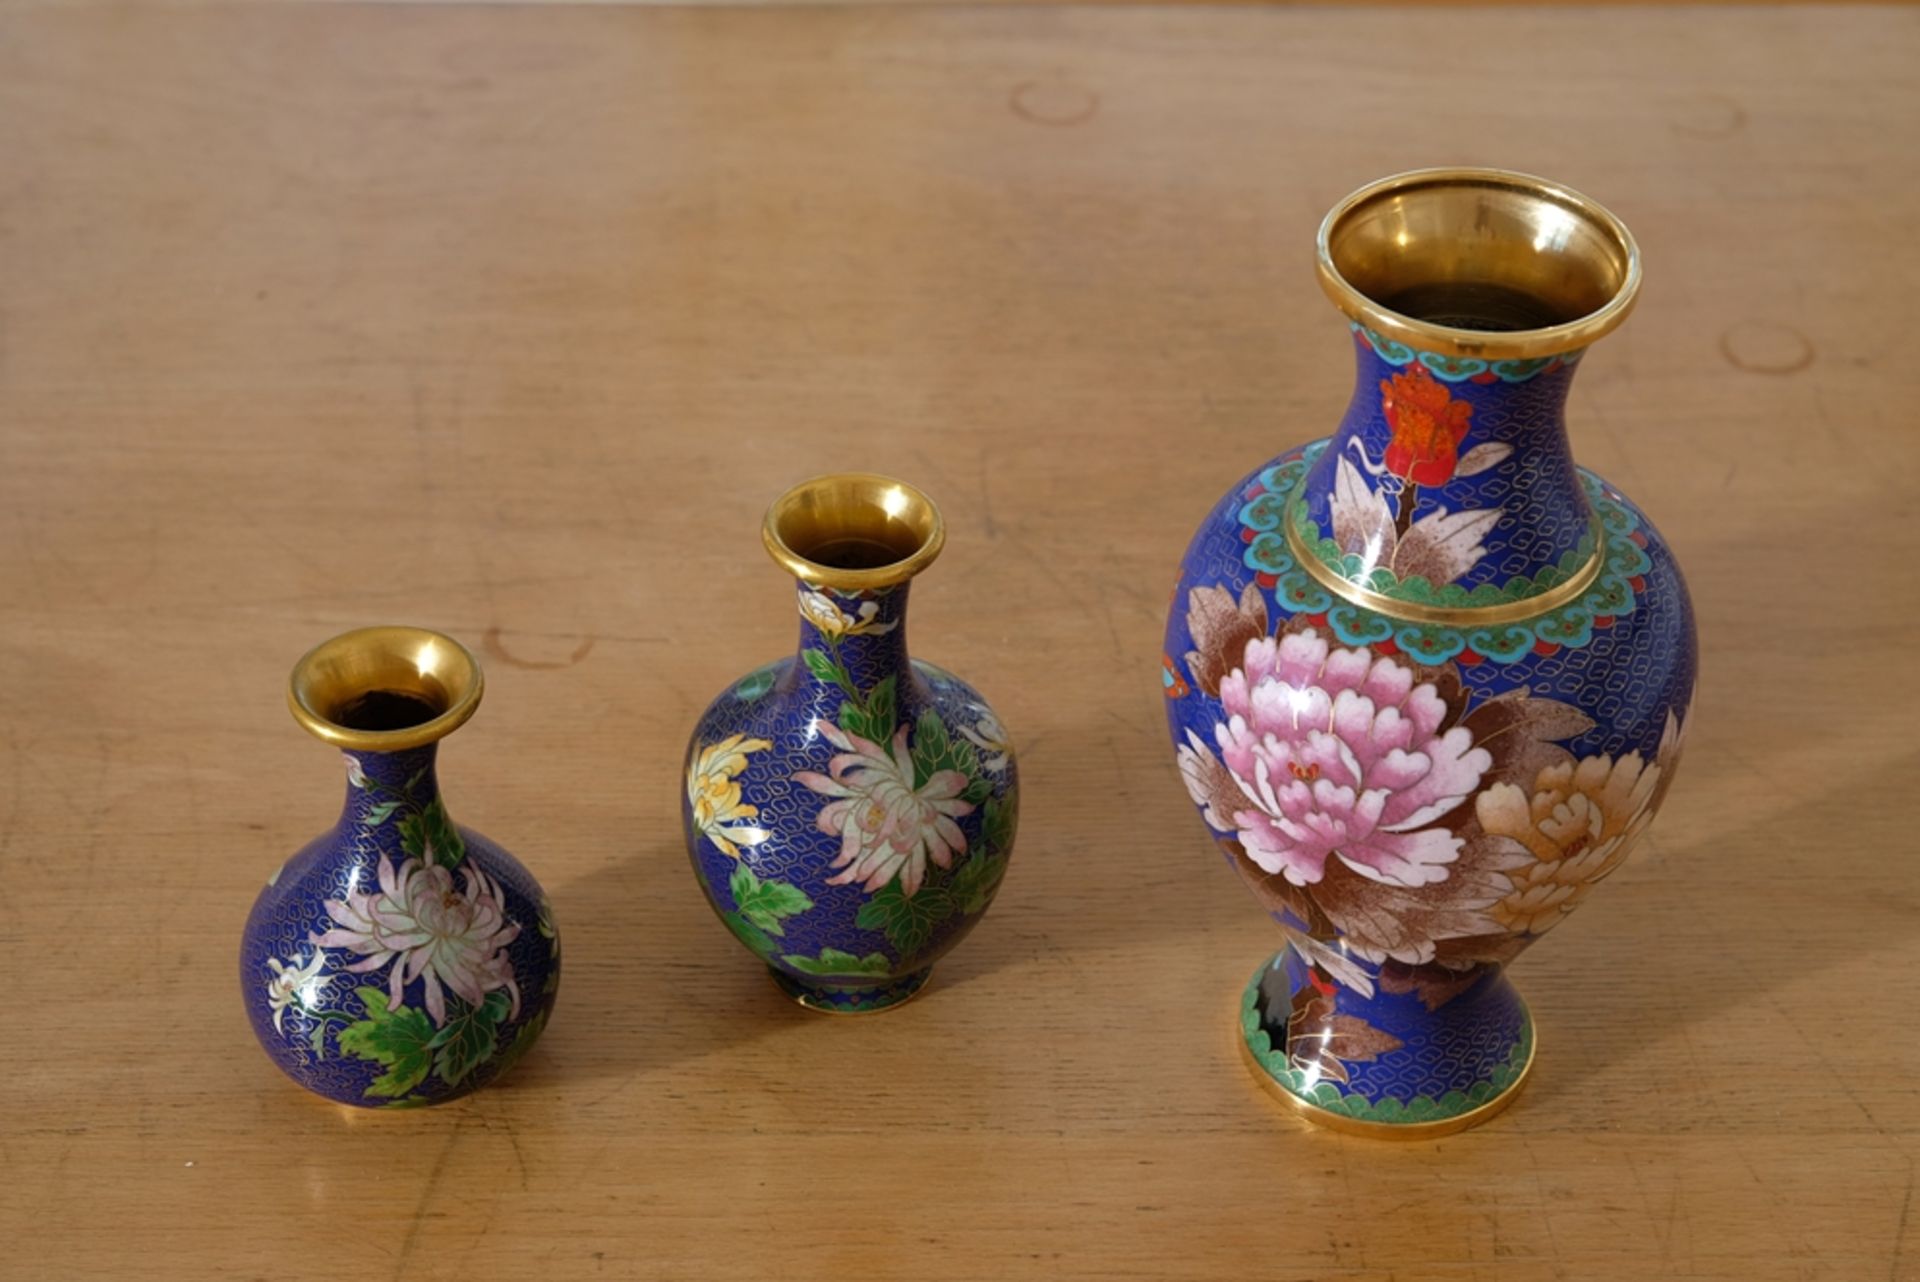 Japanische Cloisonné-Vasen, drei blaue Vasen aus Emaille. Mit floralen Motiven verziert. Inneres ve - Bild 2 aus 3